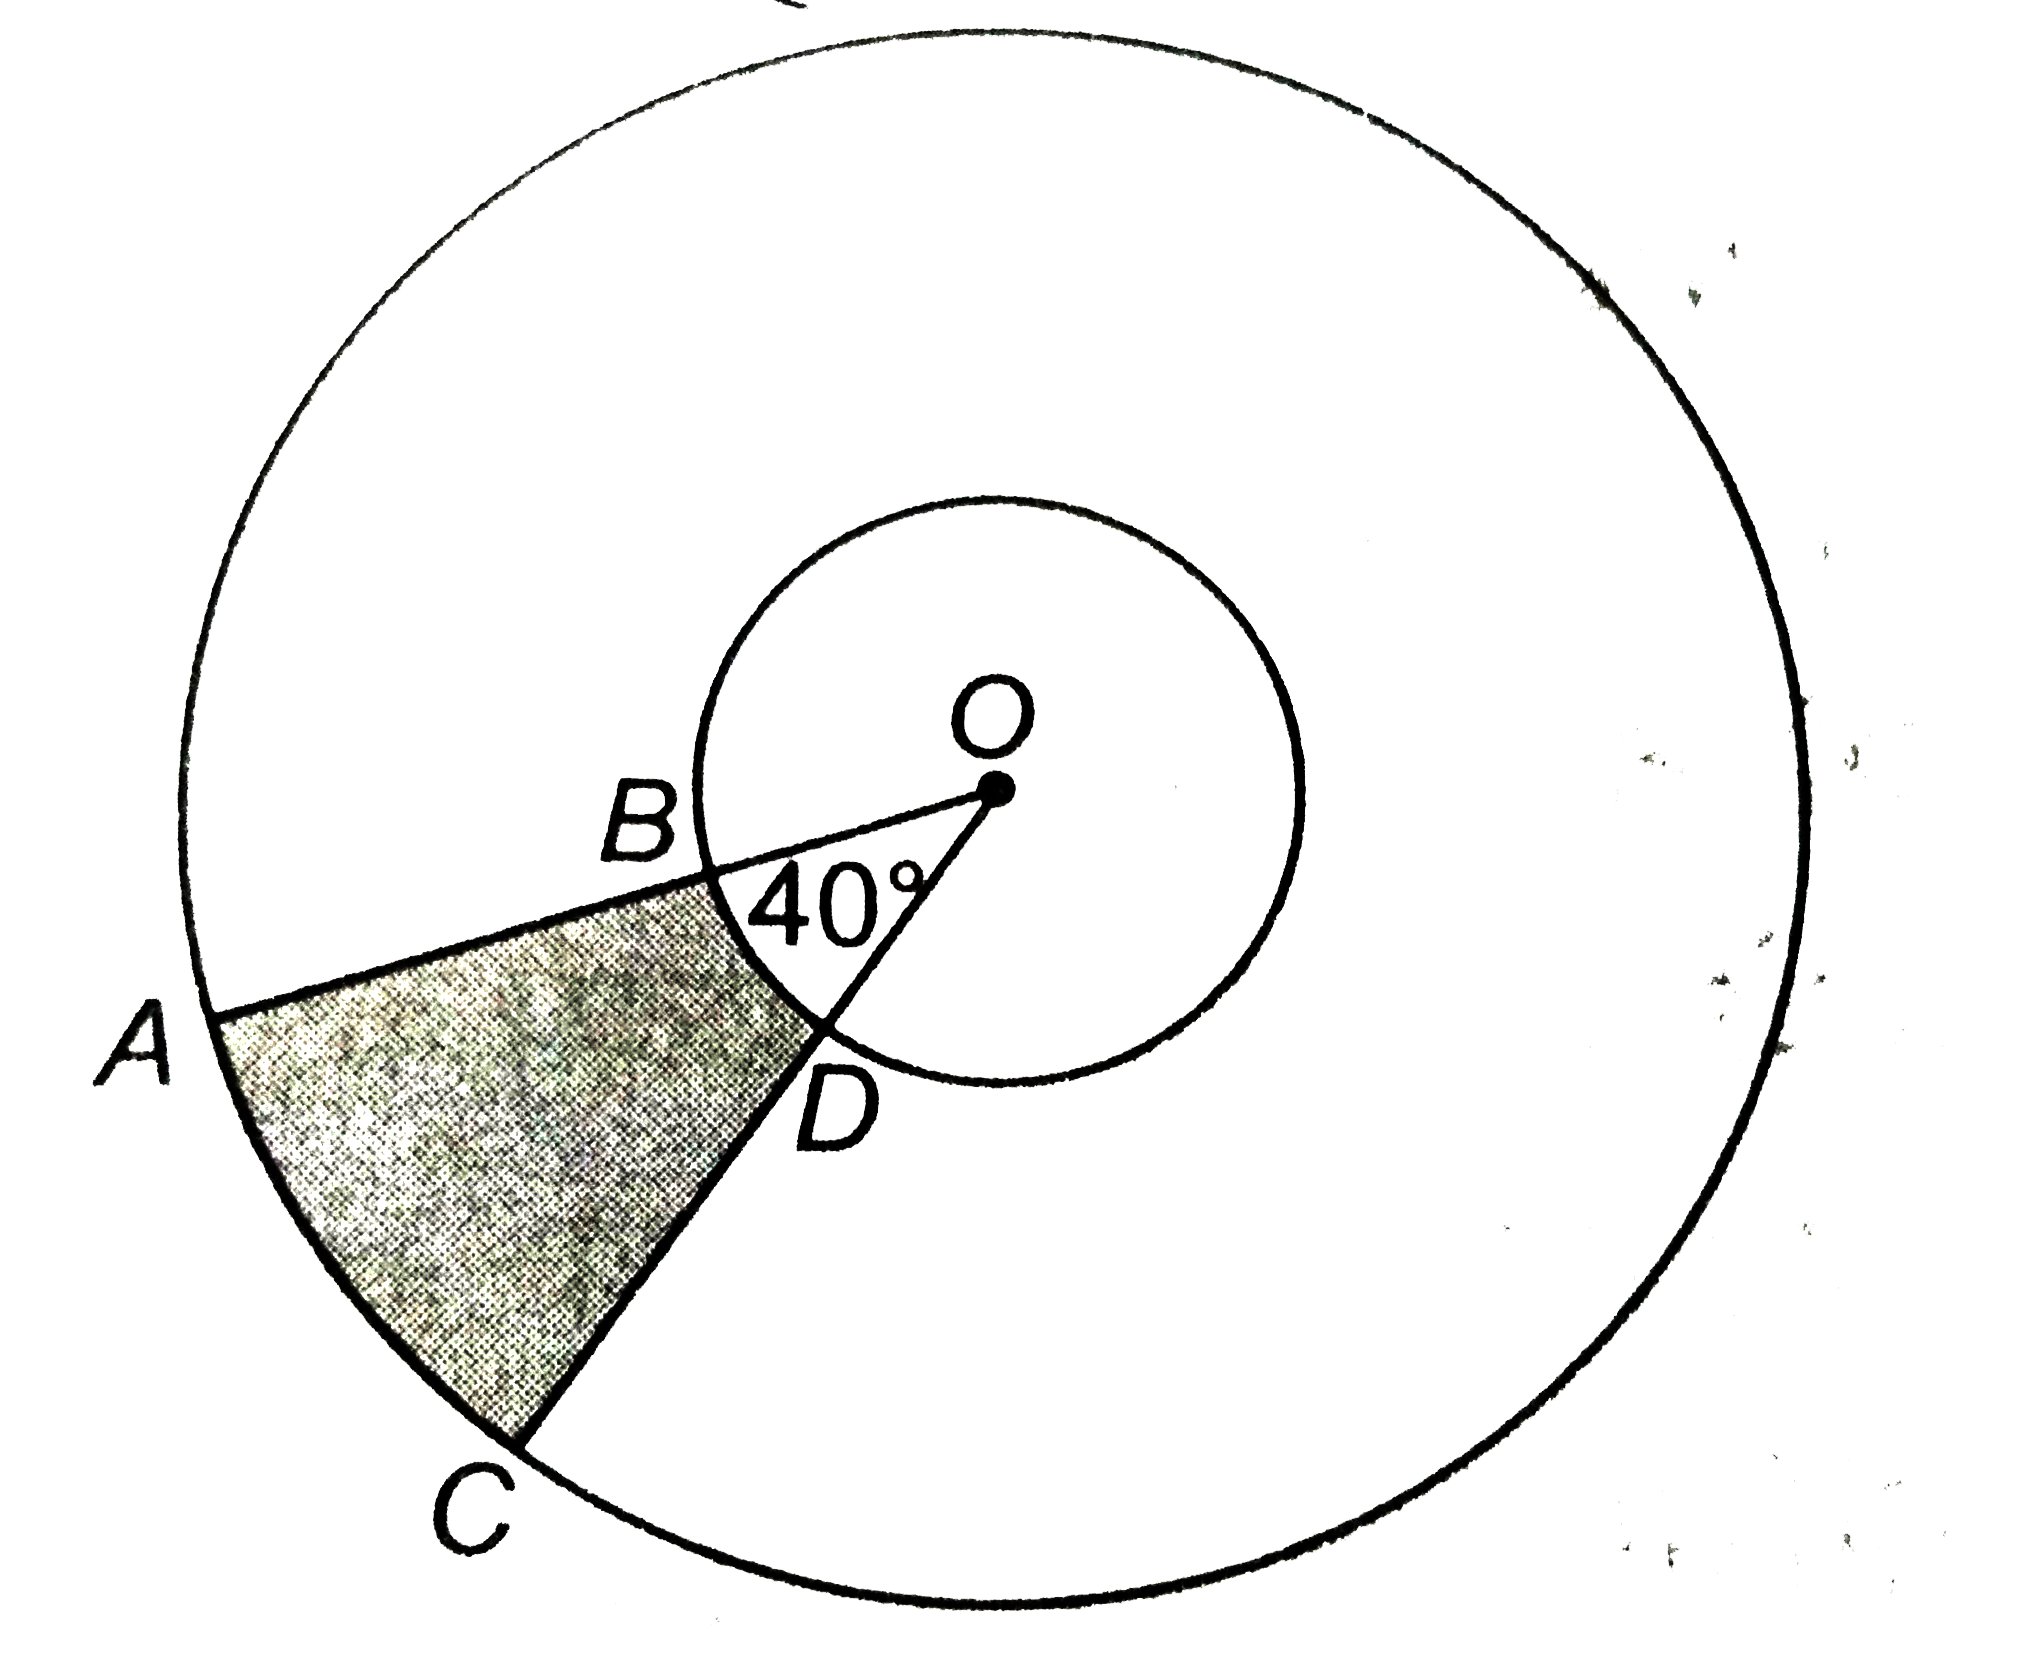 आकृति में , छायांकित  भाग का क्षेत्रफल  ज्ञात कीजिए , यदि  केंद्र  O  वाले  दोनों सकेंद्रिय  वृतो की त्रिज्याएँ  क्रमश  : 7  सेमी  और 14  सेमी है  तथा angleAOC = 40^(@)  है ।